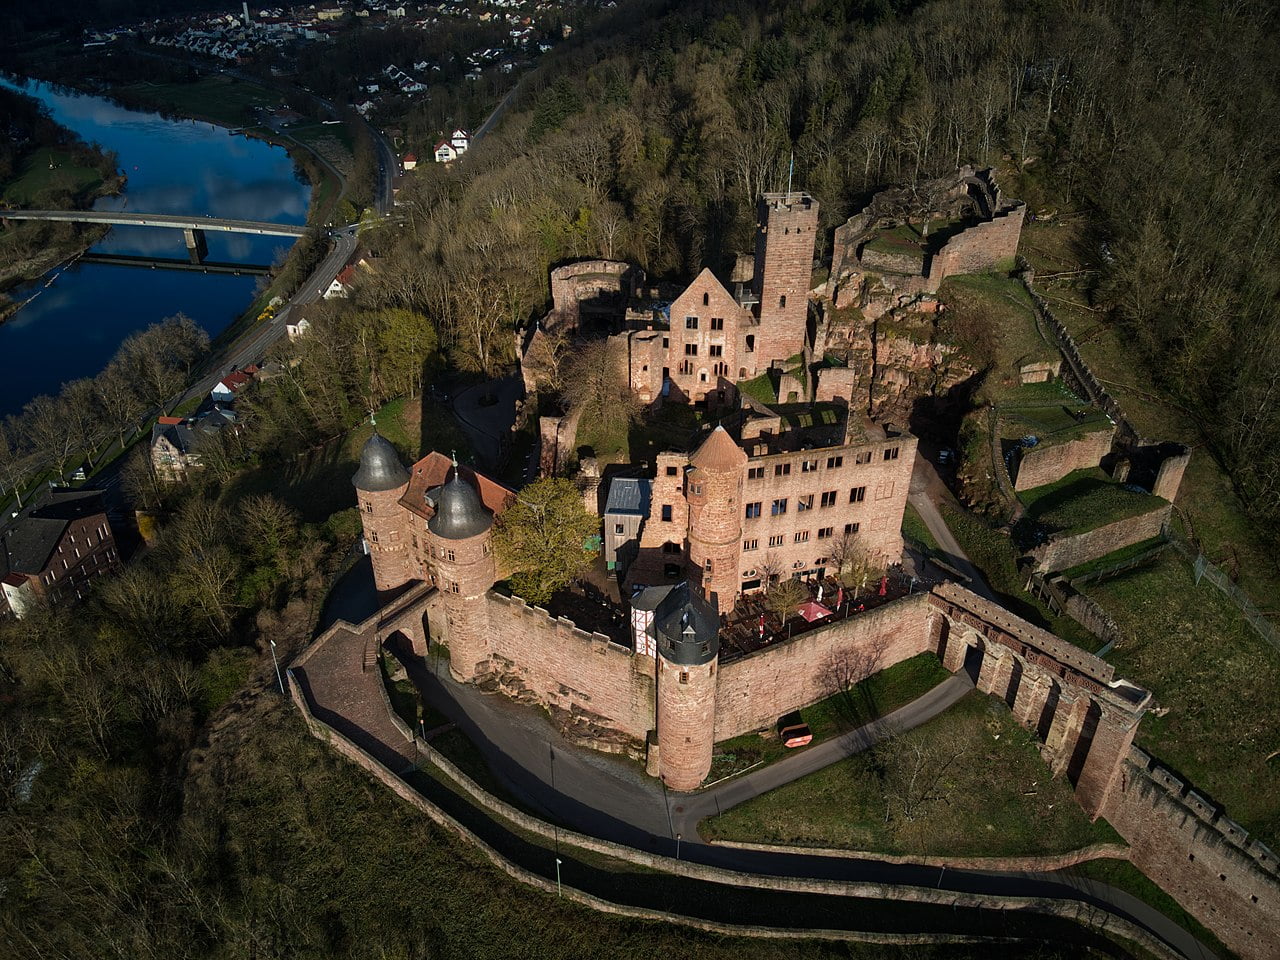 Burg Wertheim - Von Agricolax - Eigenes Werk, CC BY-SA 4.0, https://commons.wikimedia.org/w/index.php?curid=116691208